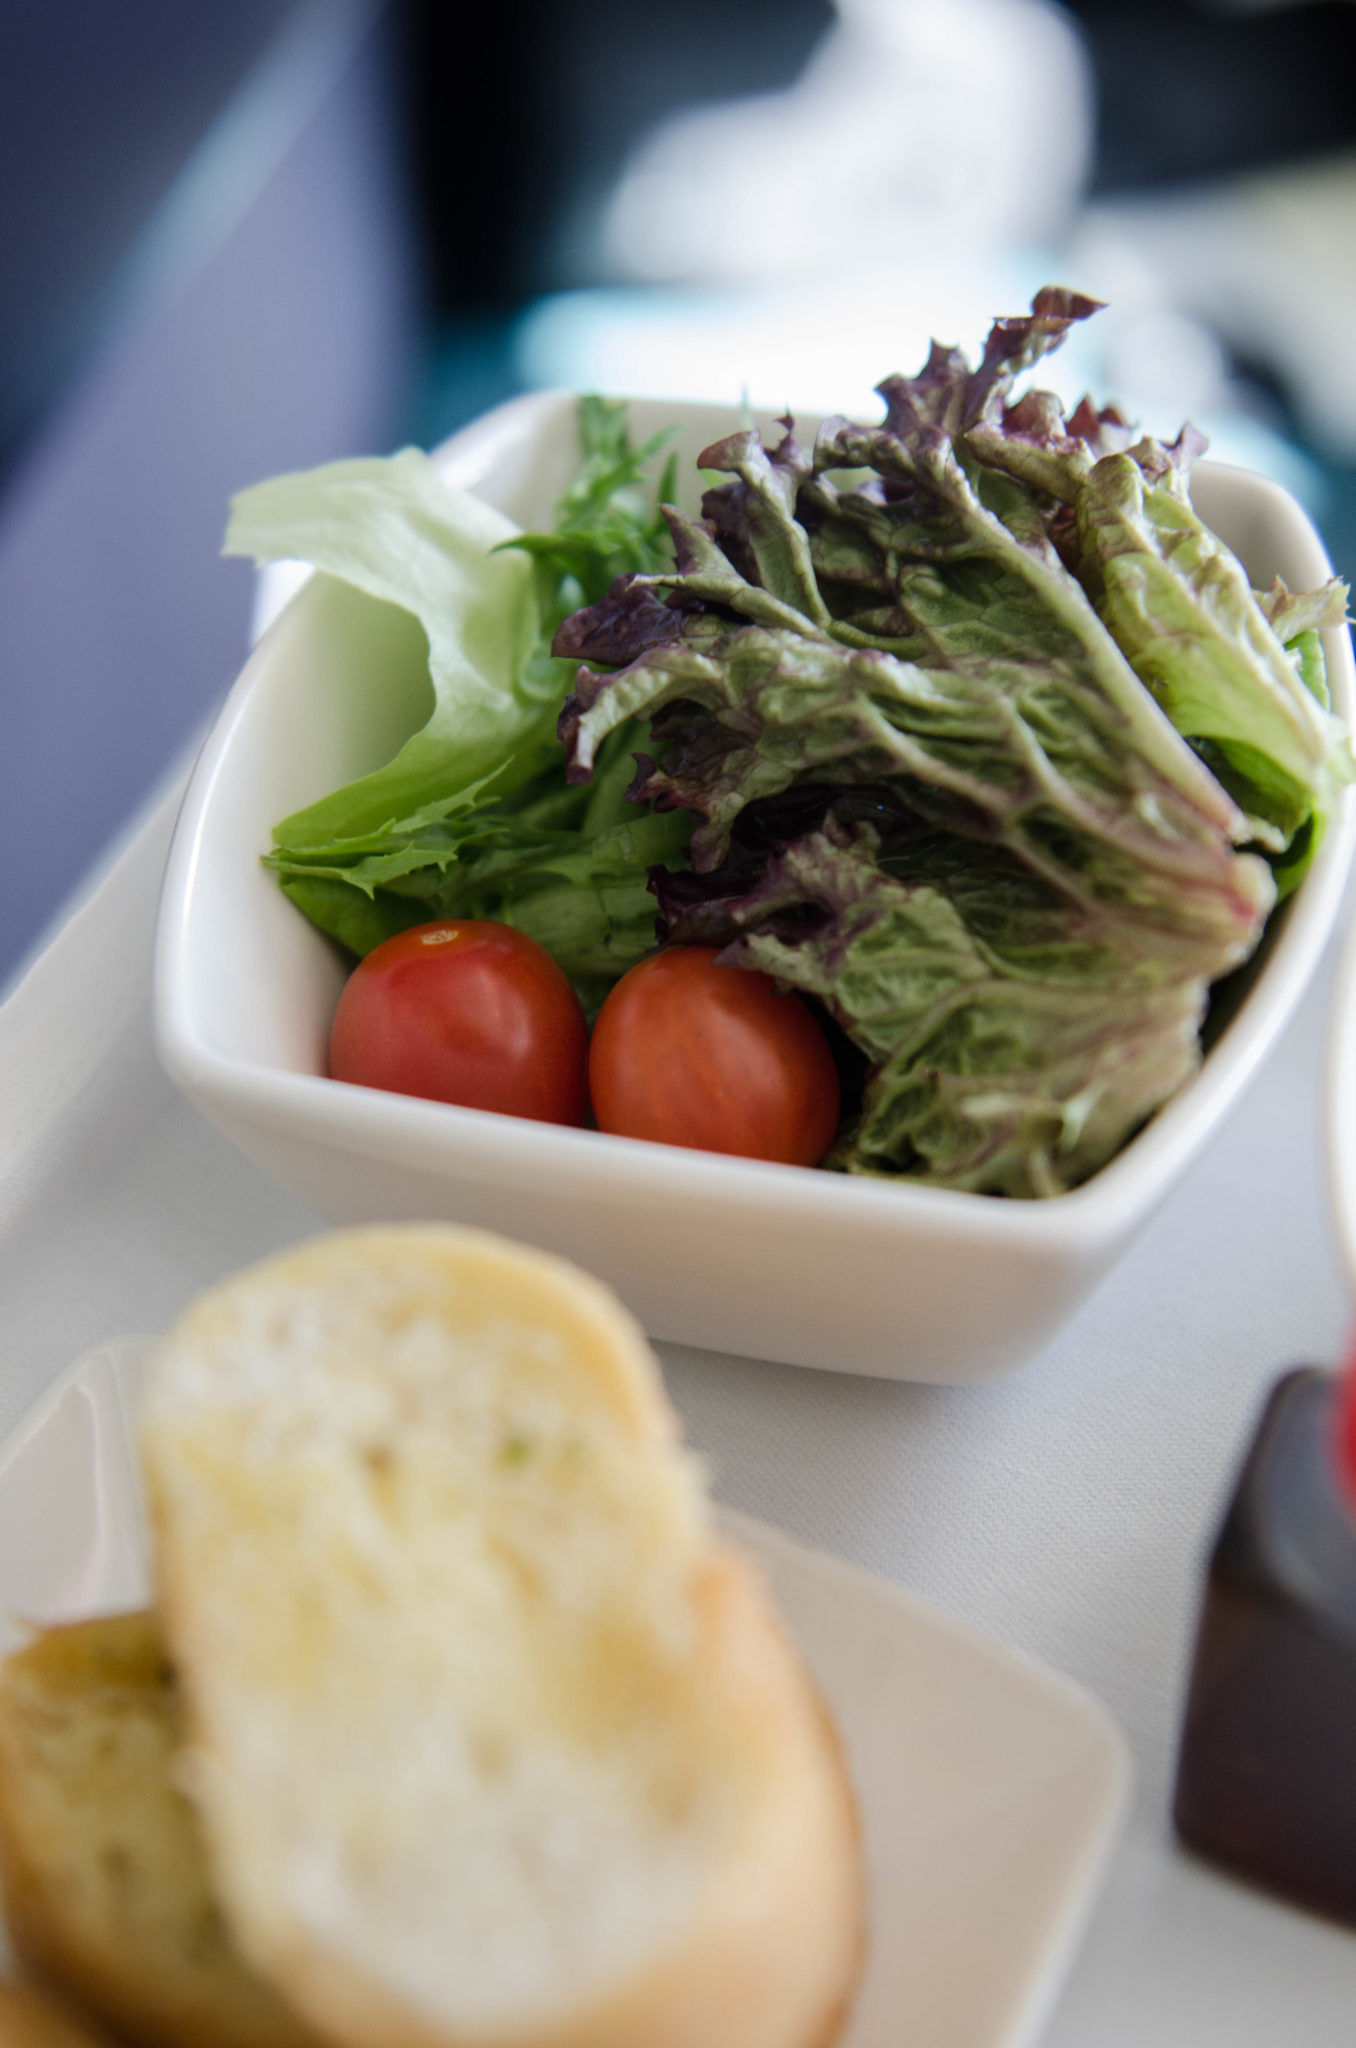 Das Mittagessen in der Cathay Pacific Business Class ist frisch und lecker.